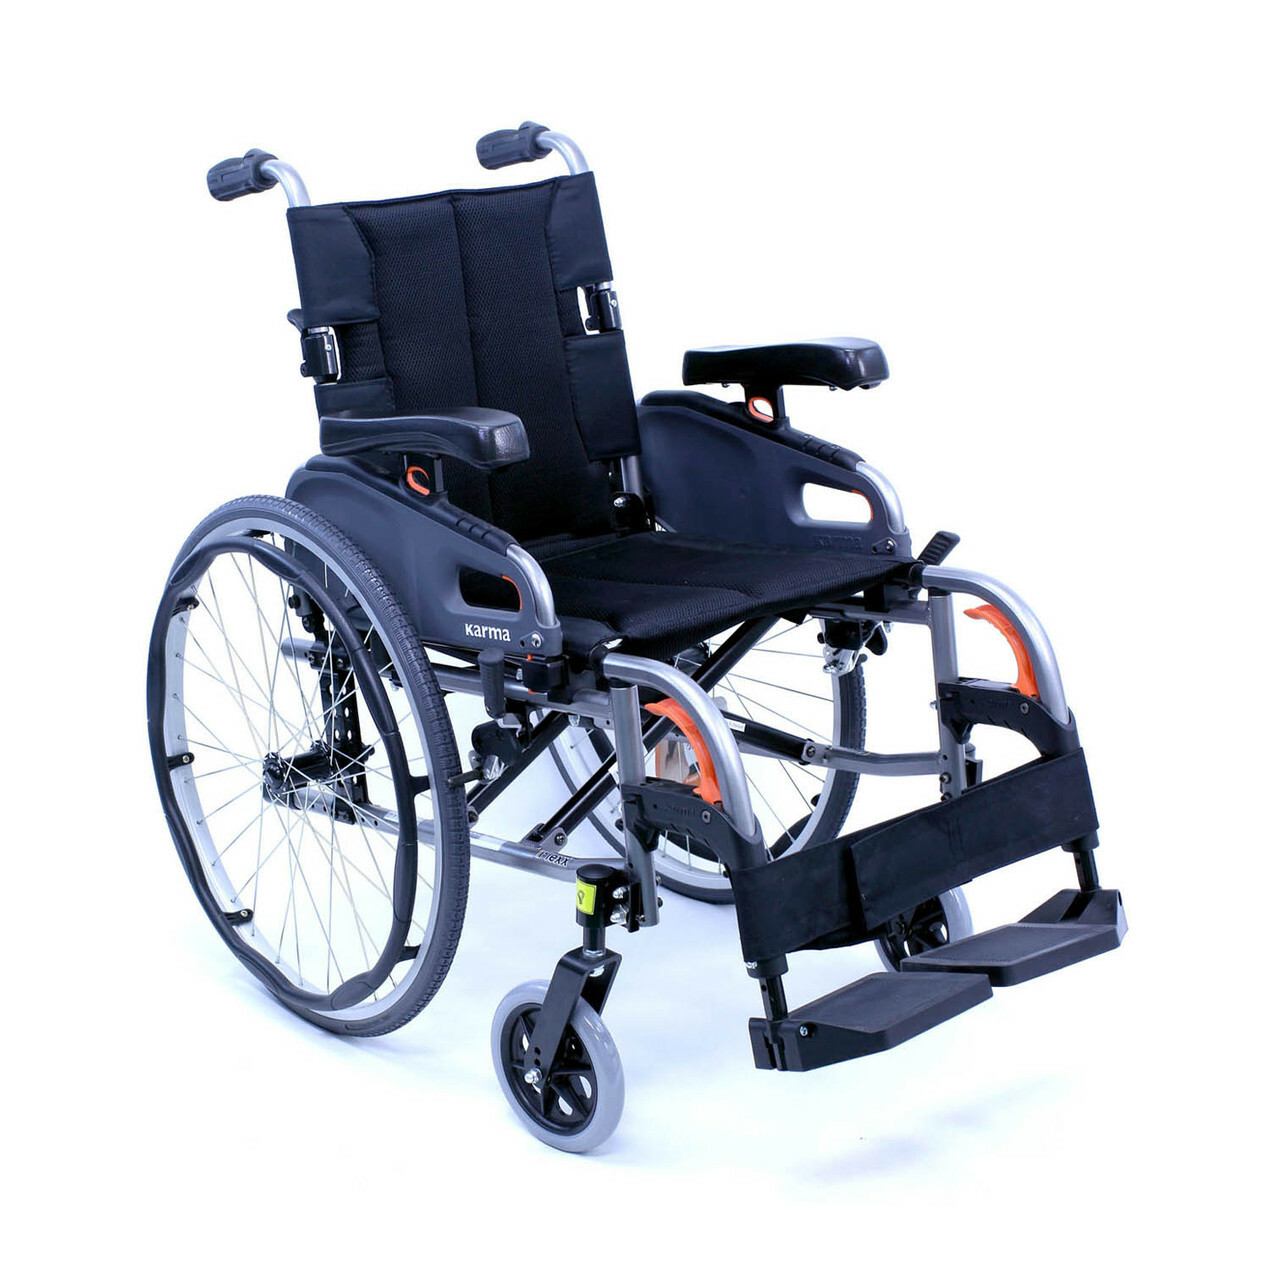 flexx-wheelchair-comfort-16994.jpg